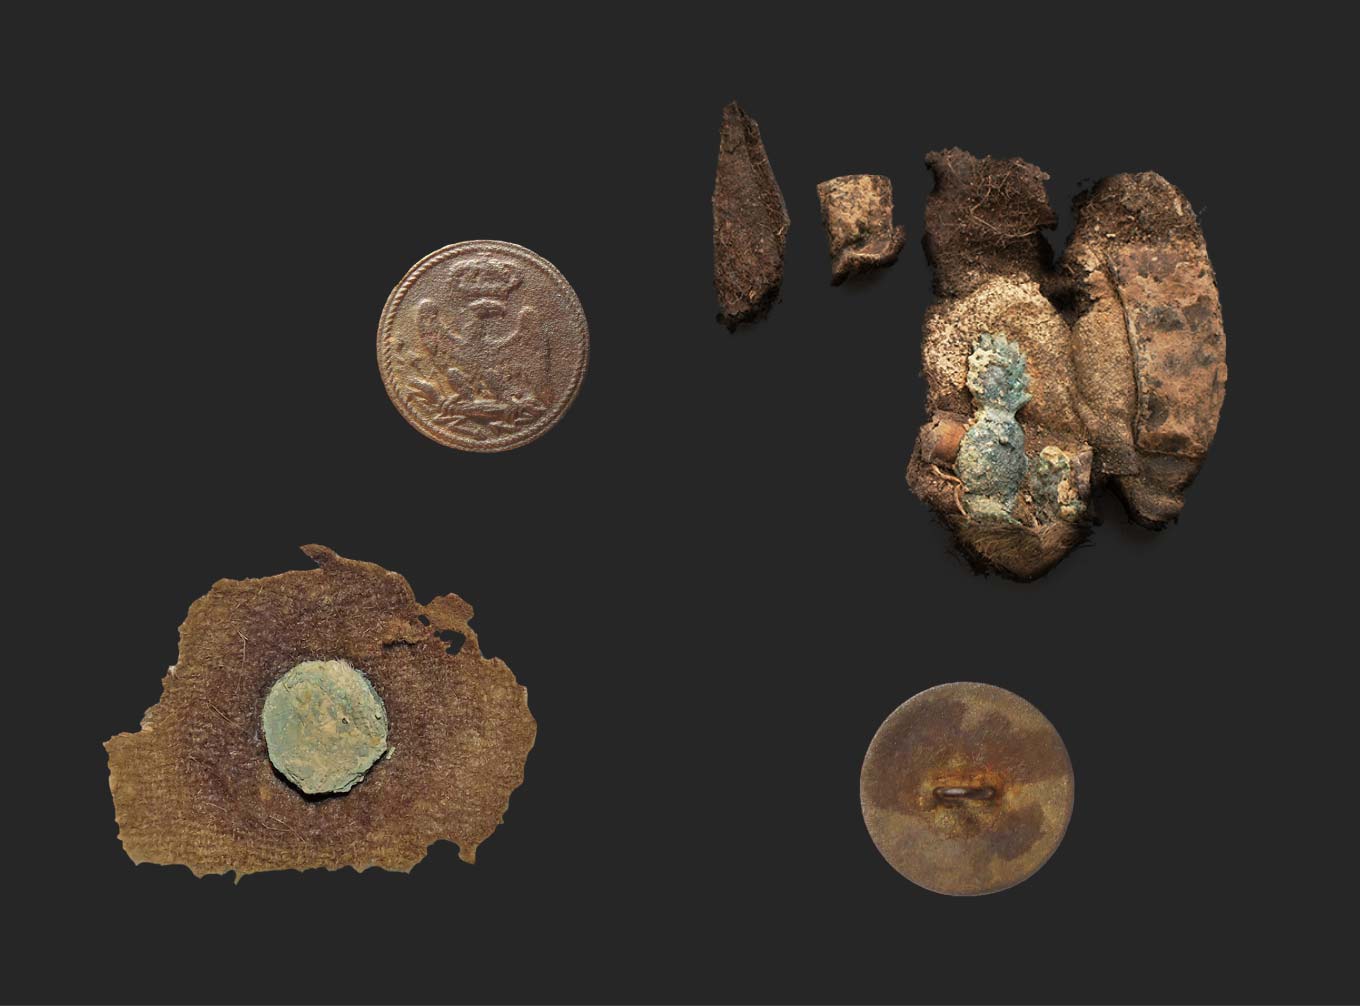 Пуговицы солдатской униформы, обнаруженные во время раскопок возле Валутиной горы